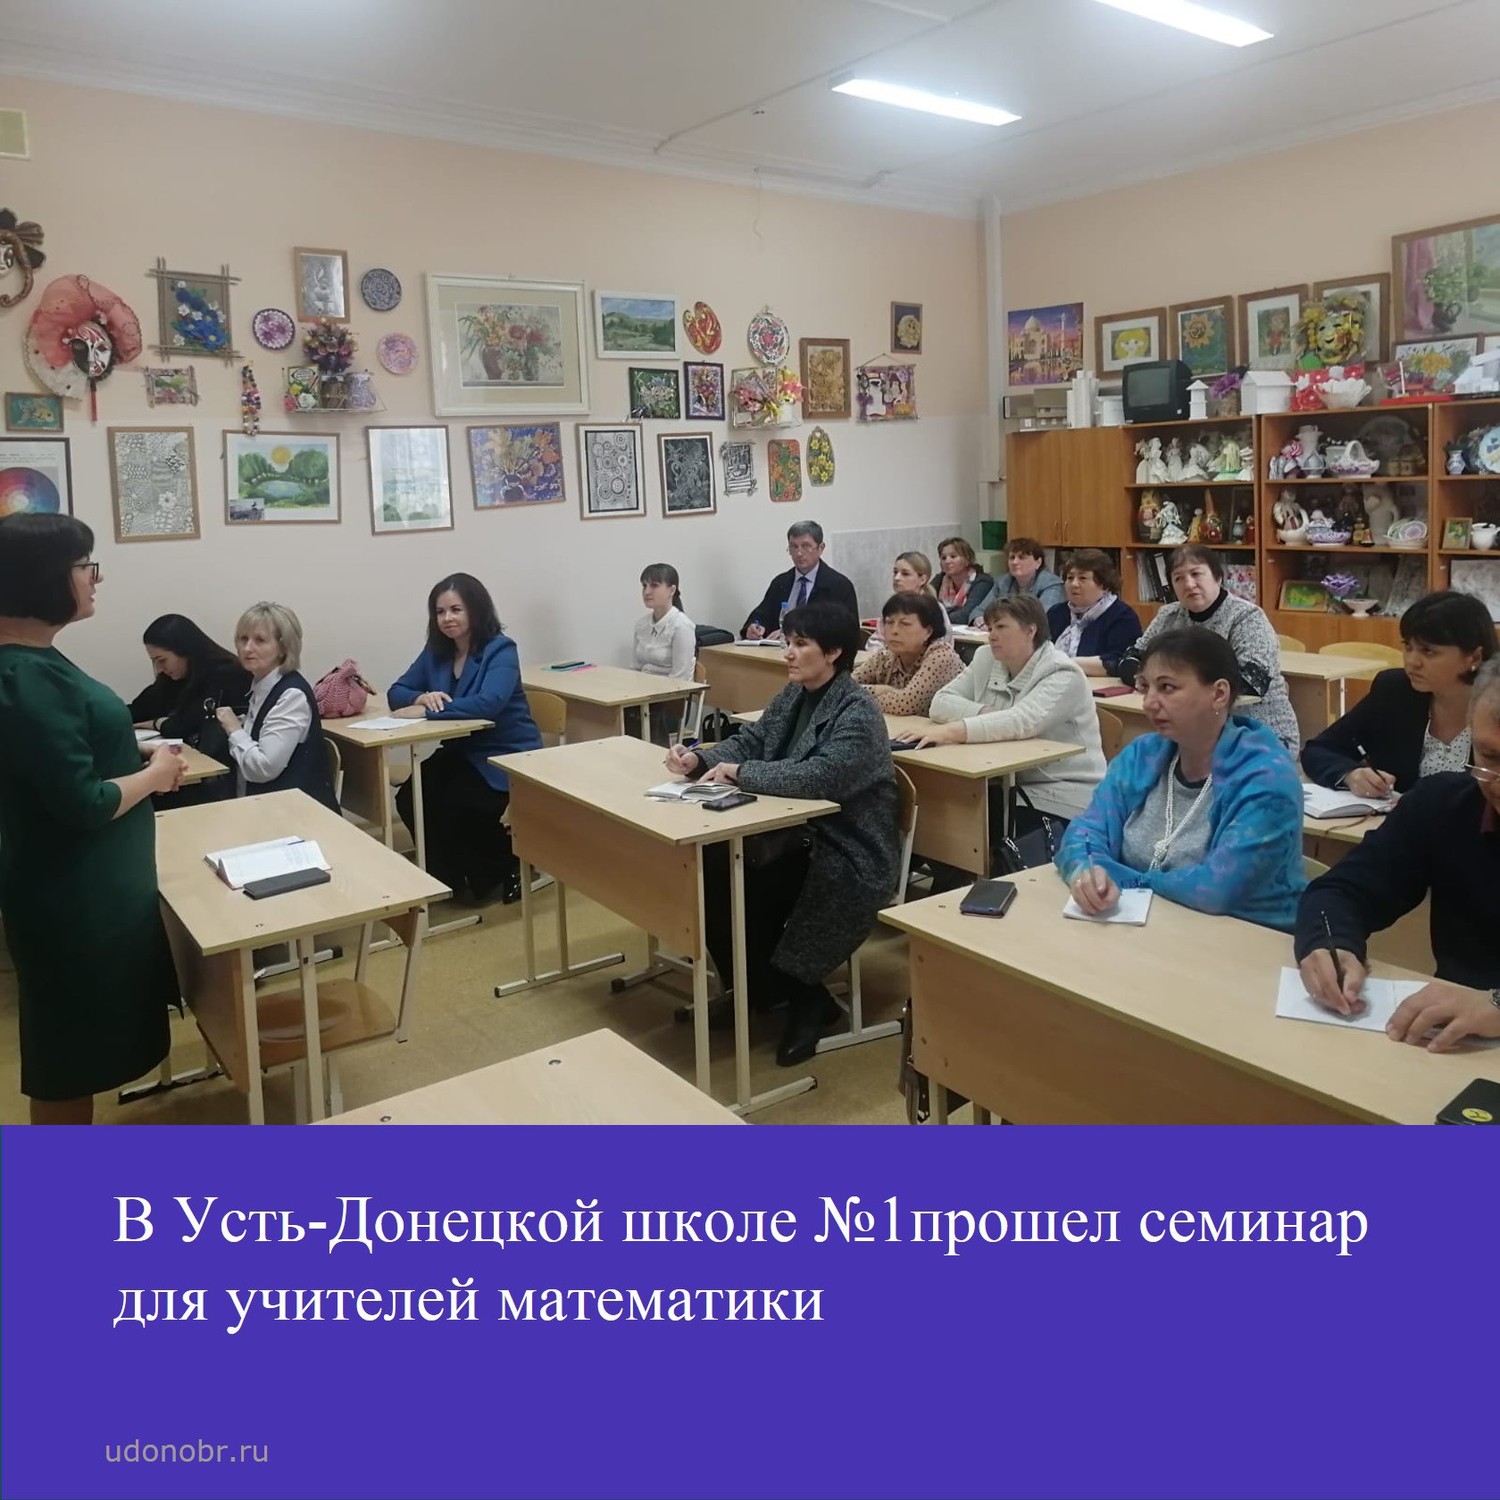 В Усть-Донецкой школе №1 прошел семинар для учителей математики